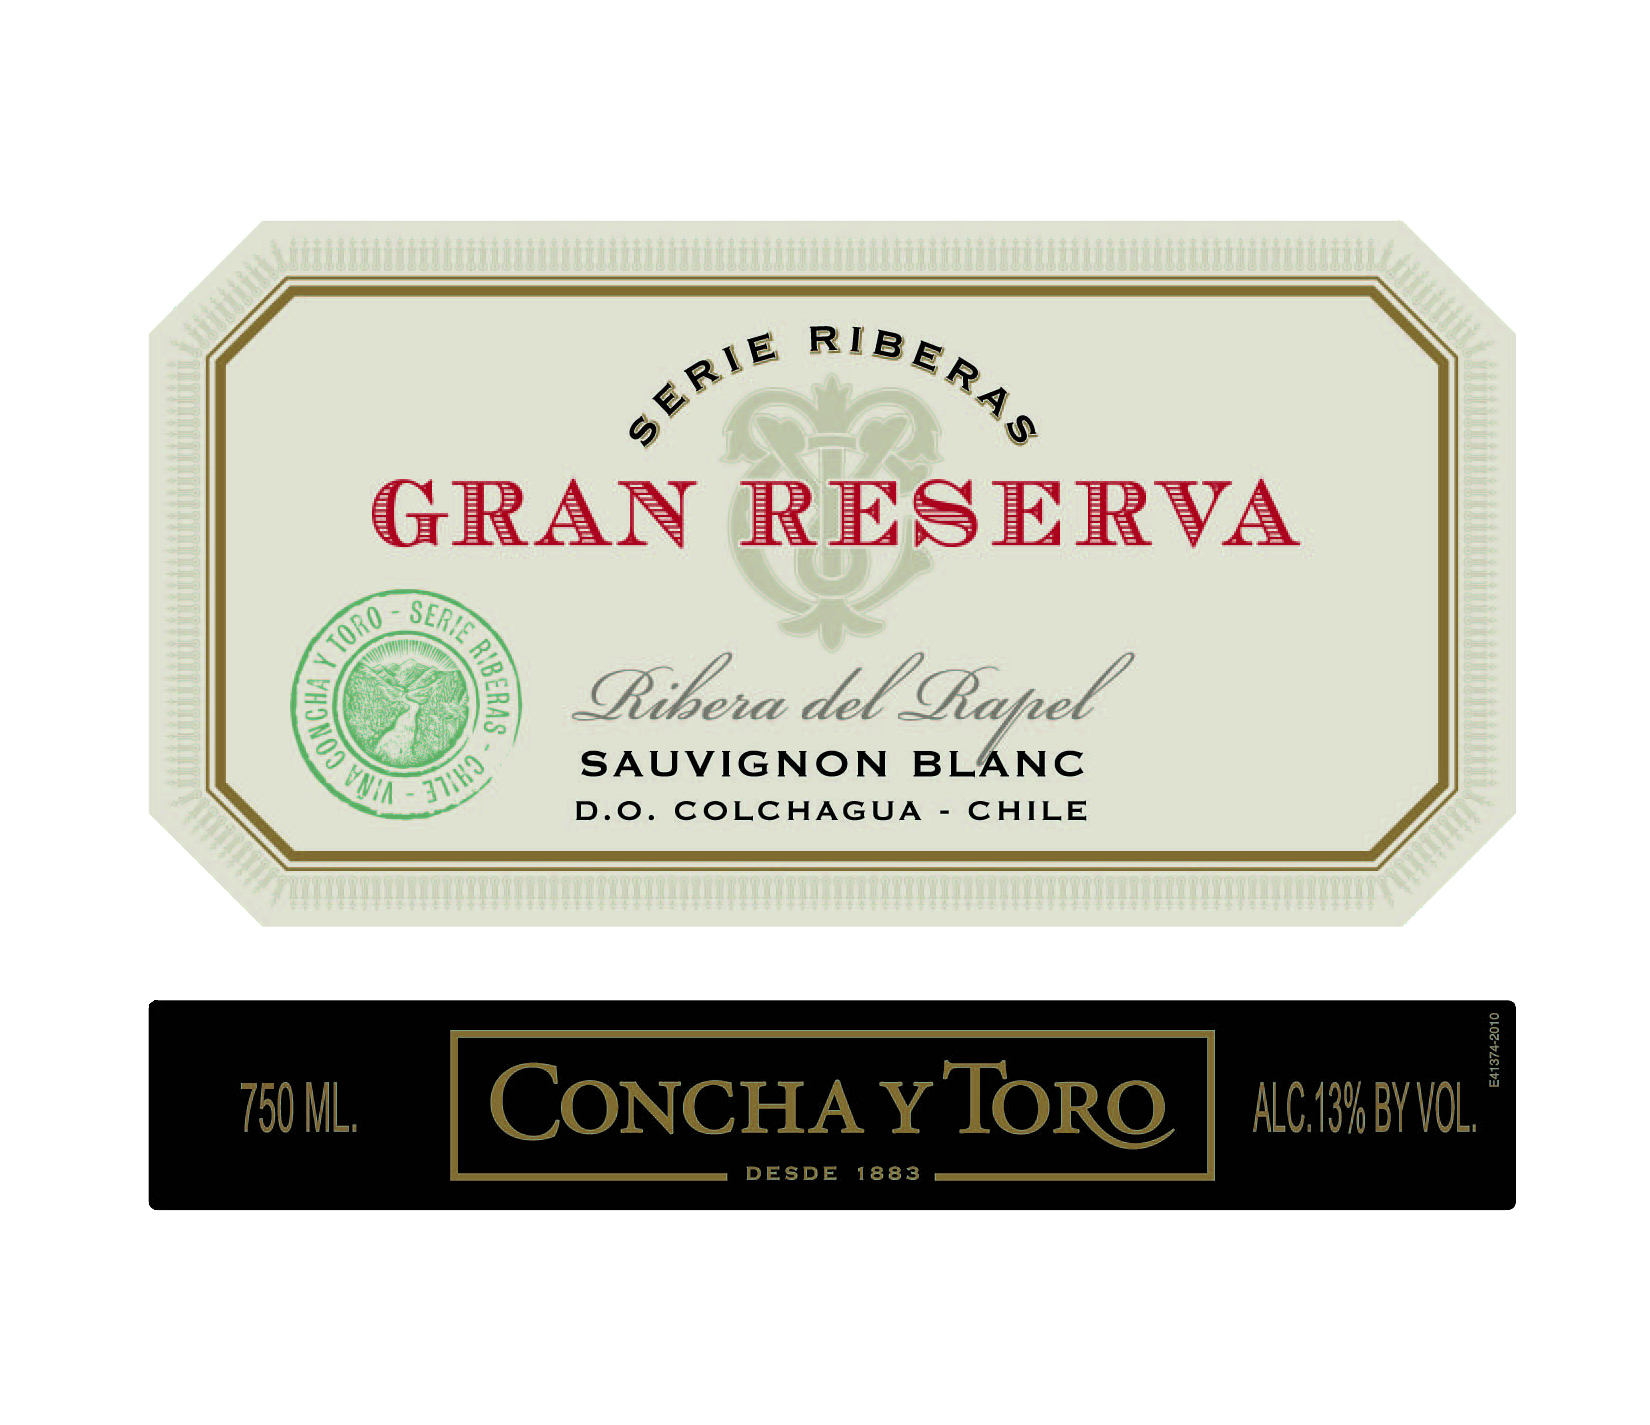 2011 Concha y Toro Gran Reserva Serie Riberas Sauvignon Blanc Chile image